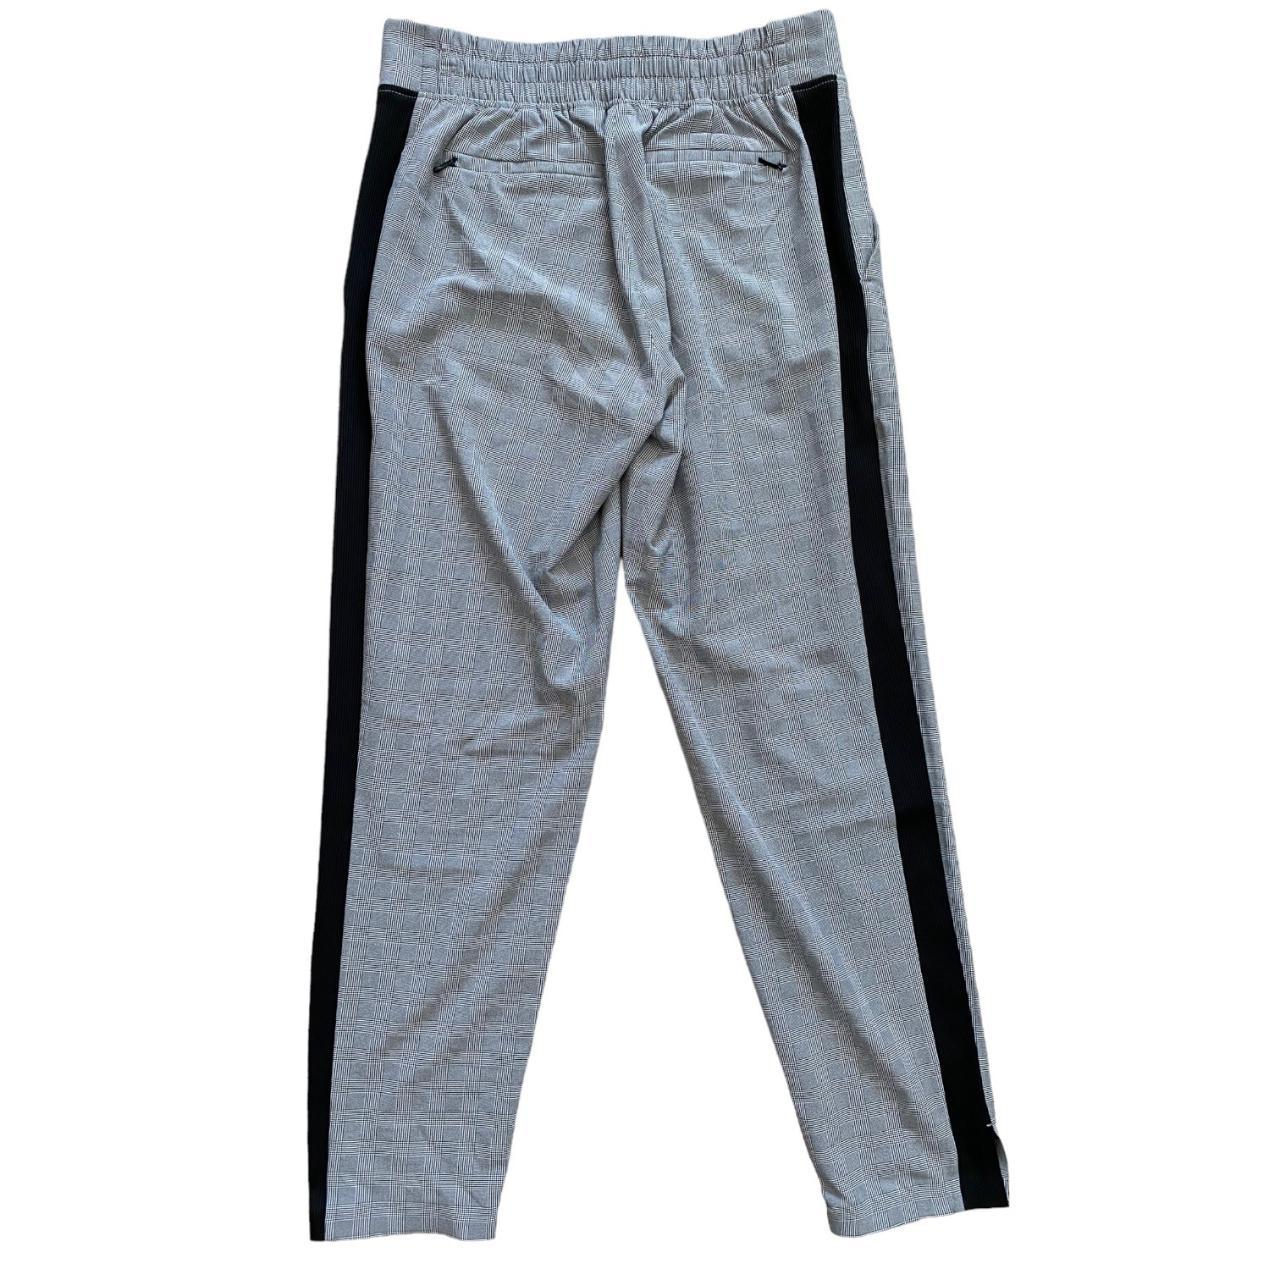 Athleta Brooklyn Ankle Pant in grey/black plaid (top - Depop